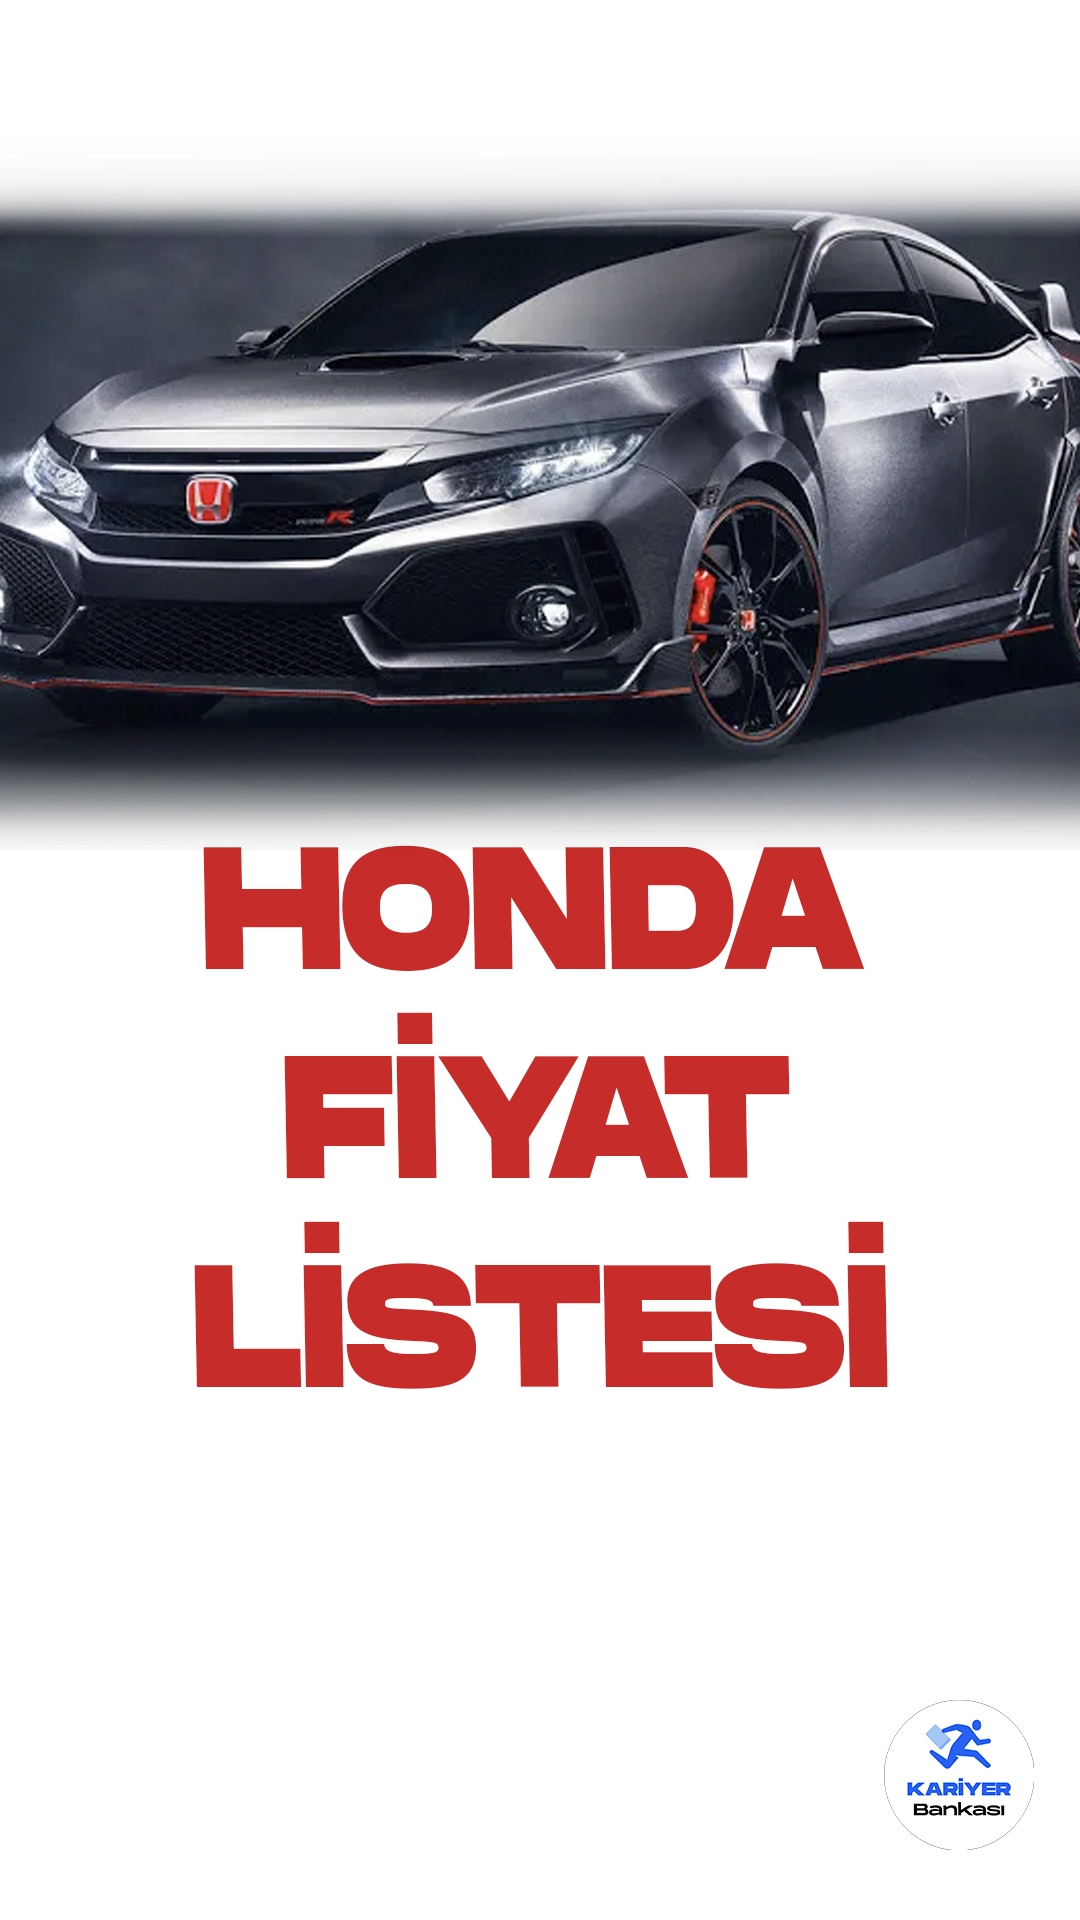 Honda Ekim 2023 Fiyat Listesi Yayımlandı. Honda, otomotiv dünyasında farklı ihtiyaçları karşılayan bir dizi araç modeli sunuyor. Bu modellerden ilki, geniş iç mekânı ve konforlu sürüşü ile öne çıkan Honda Accord. Hem güvenlik hem de performans açısından iddialı olan Accord, aileler ve iş kullanıcıları için ideal bir tercih.